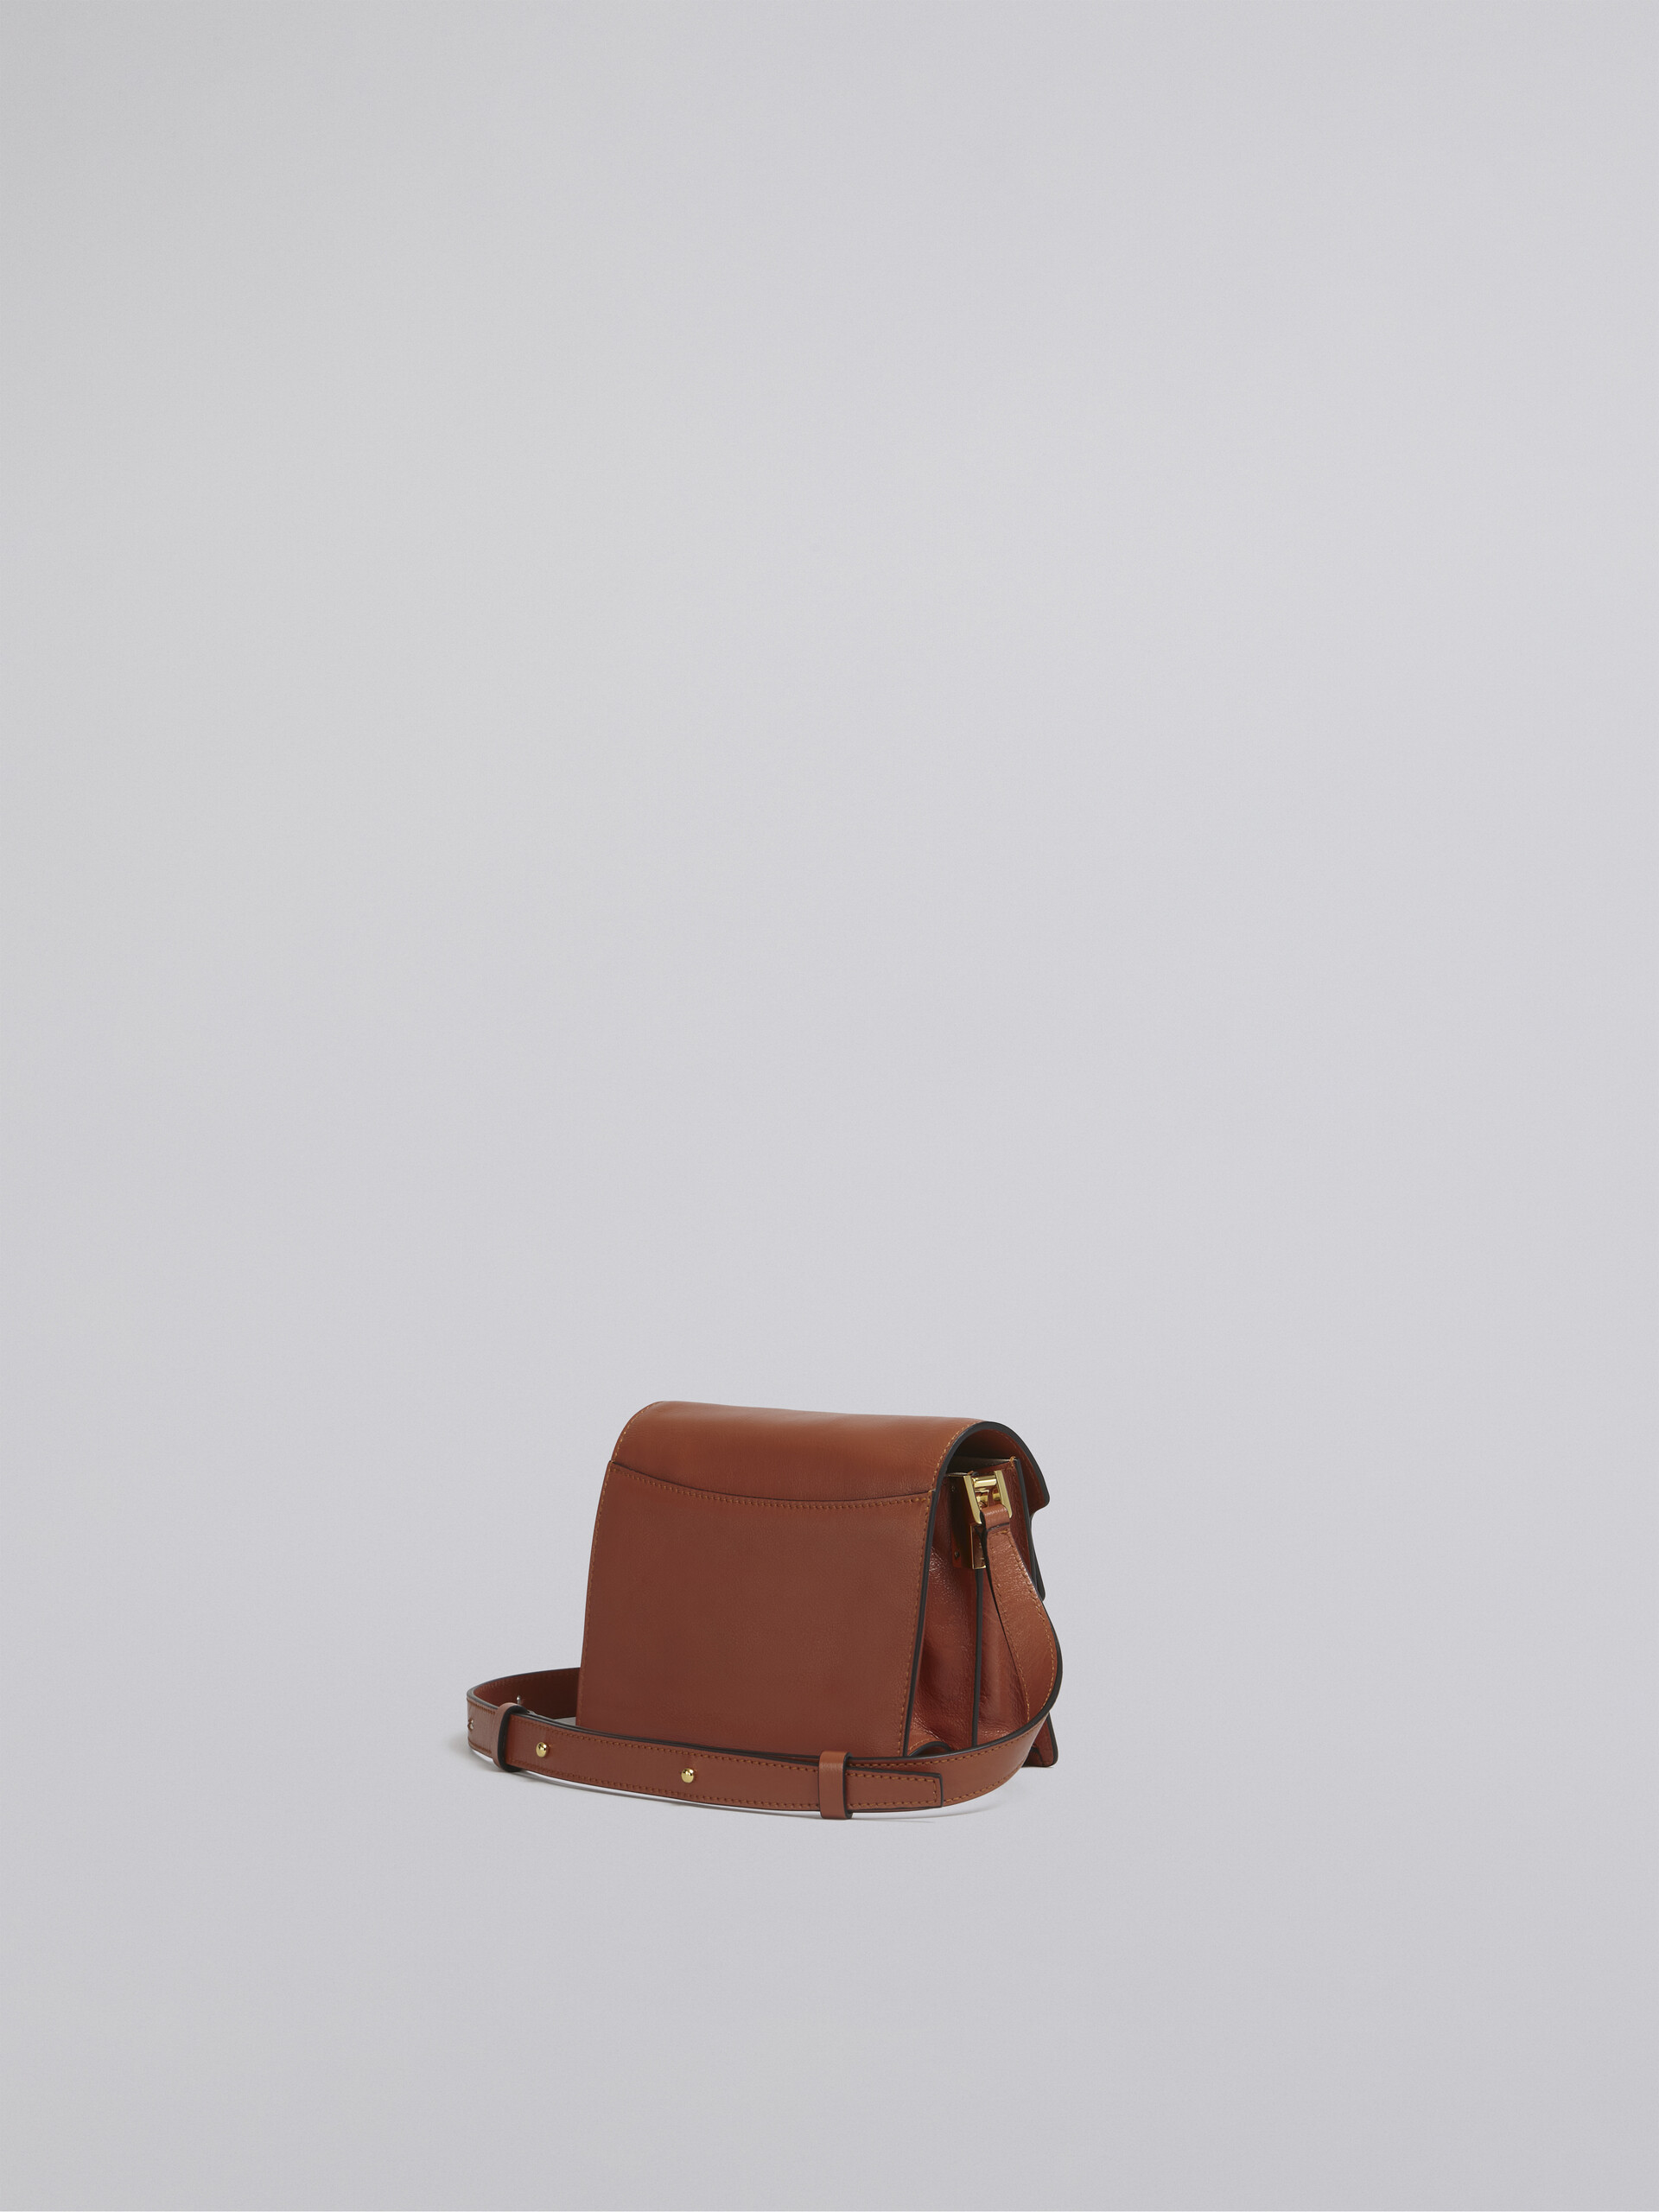 TRUNK SOFT mini bag in brown leather - Shoulder Bag - Image 3